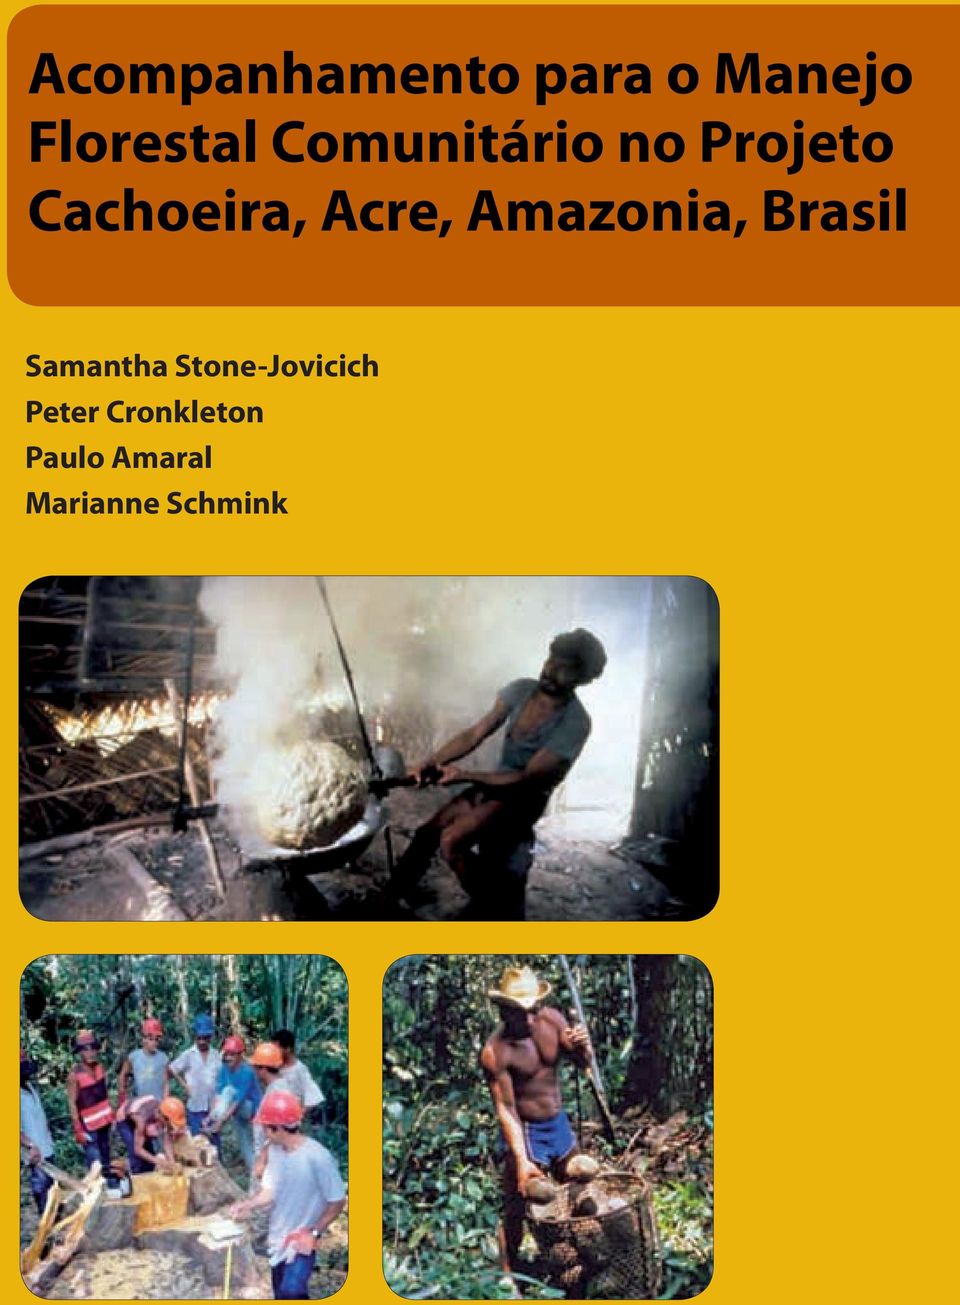 Amazonia, Brasil Samantha Stone-Jovicich